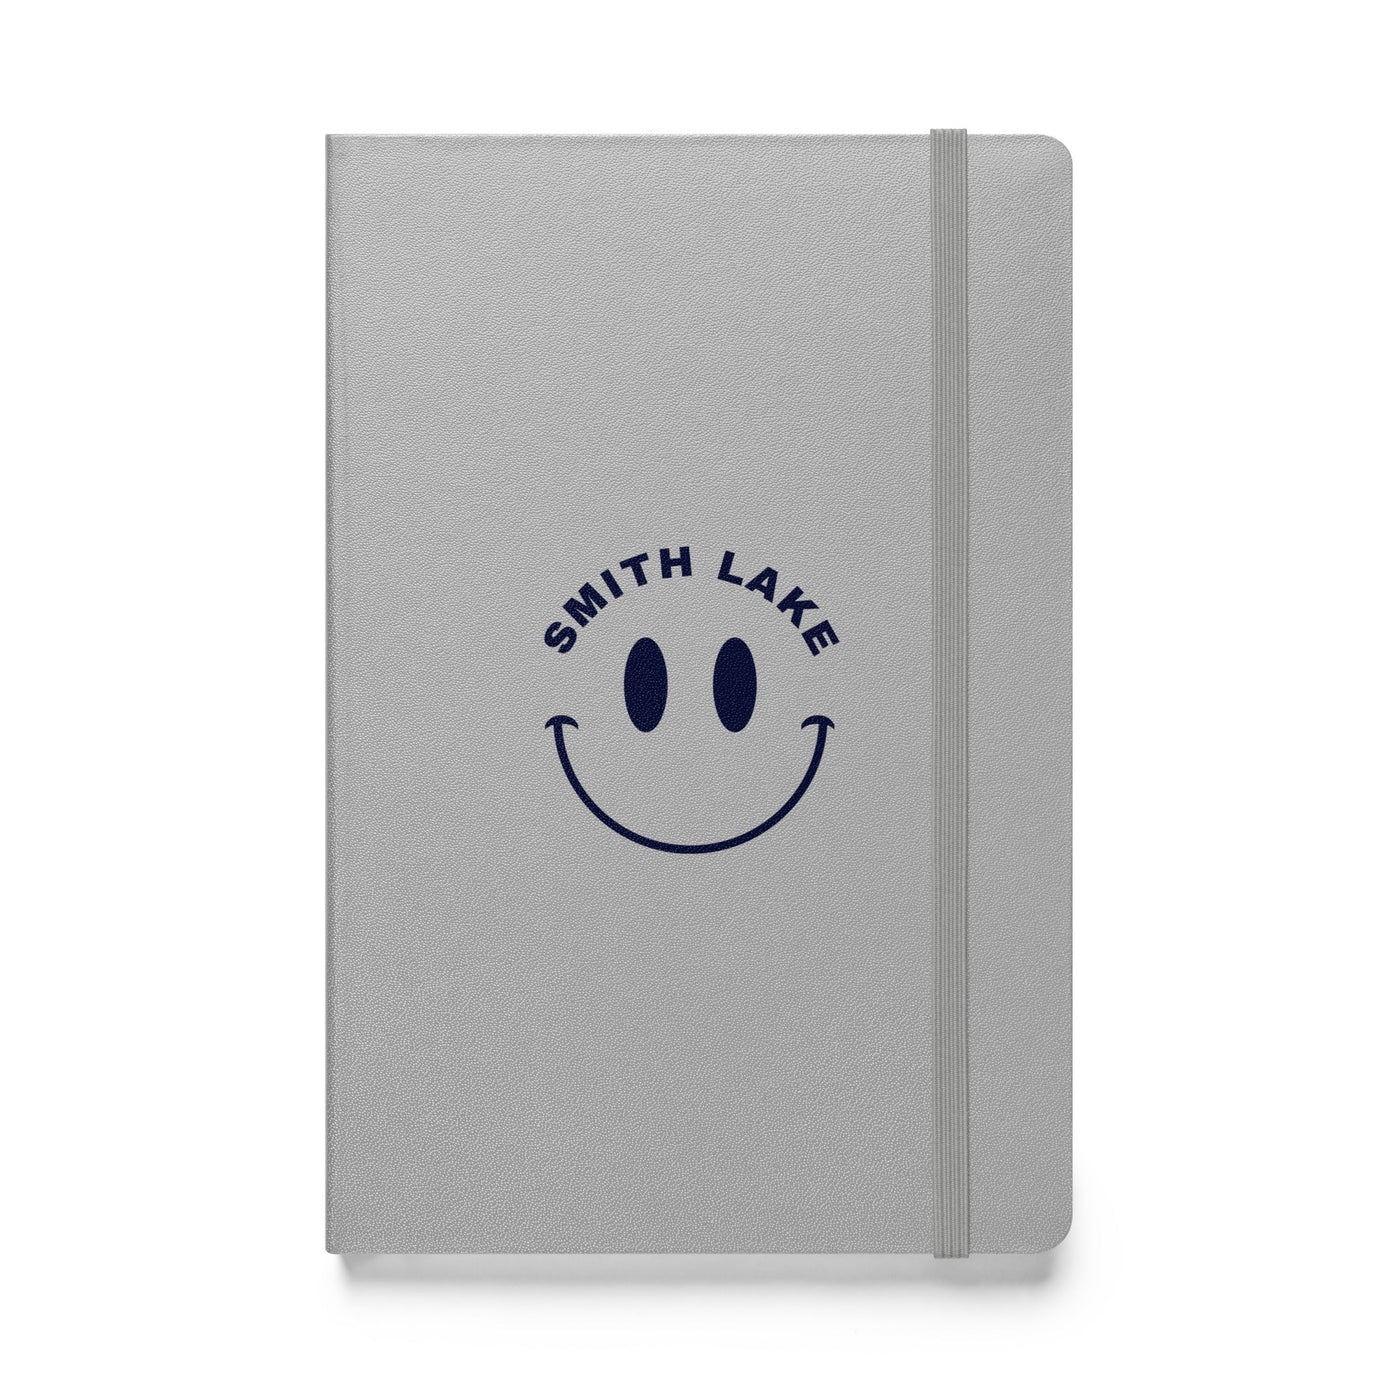 Smith Lake Hardcover Bound Notebook - Ezra's Clothing